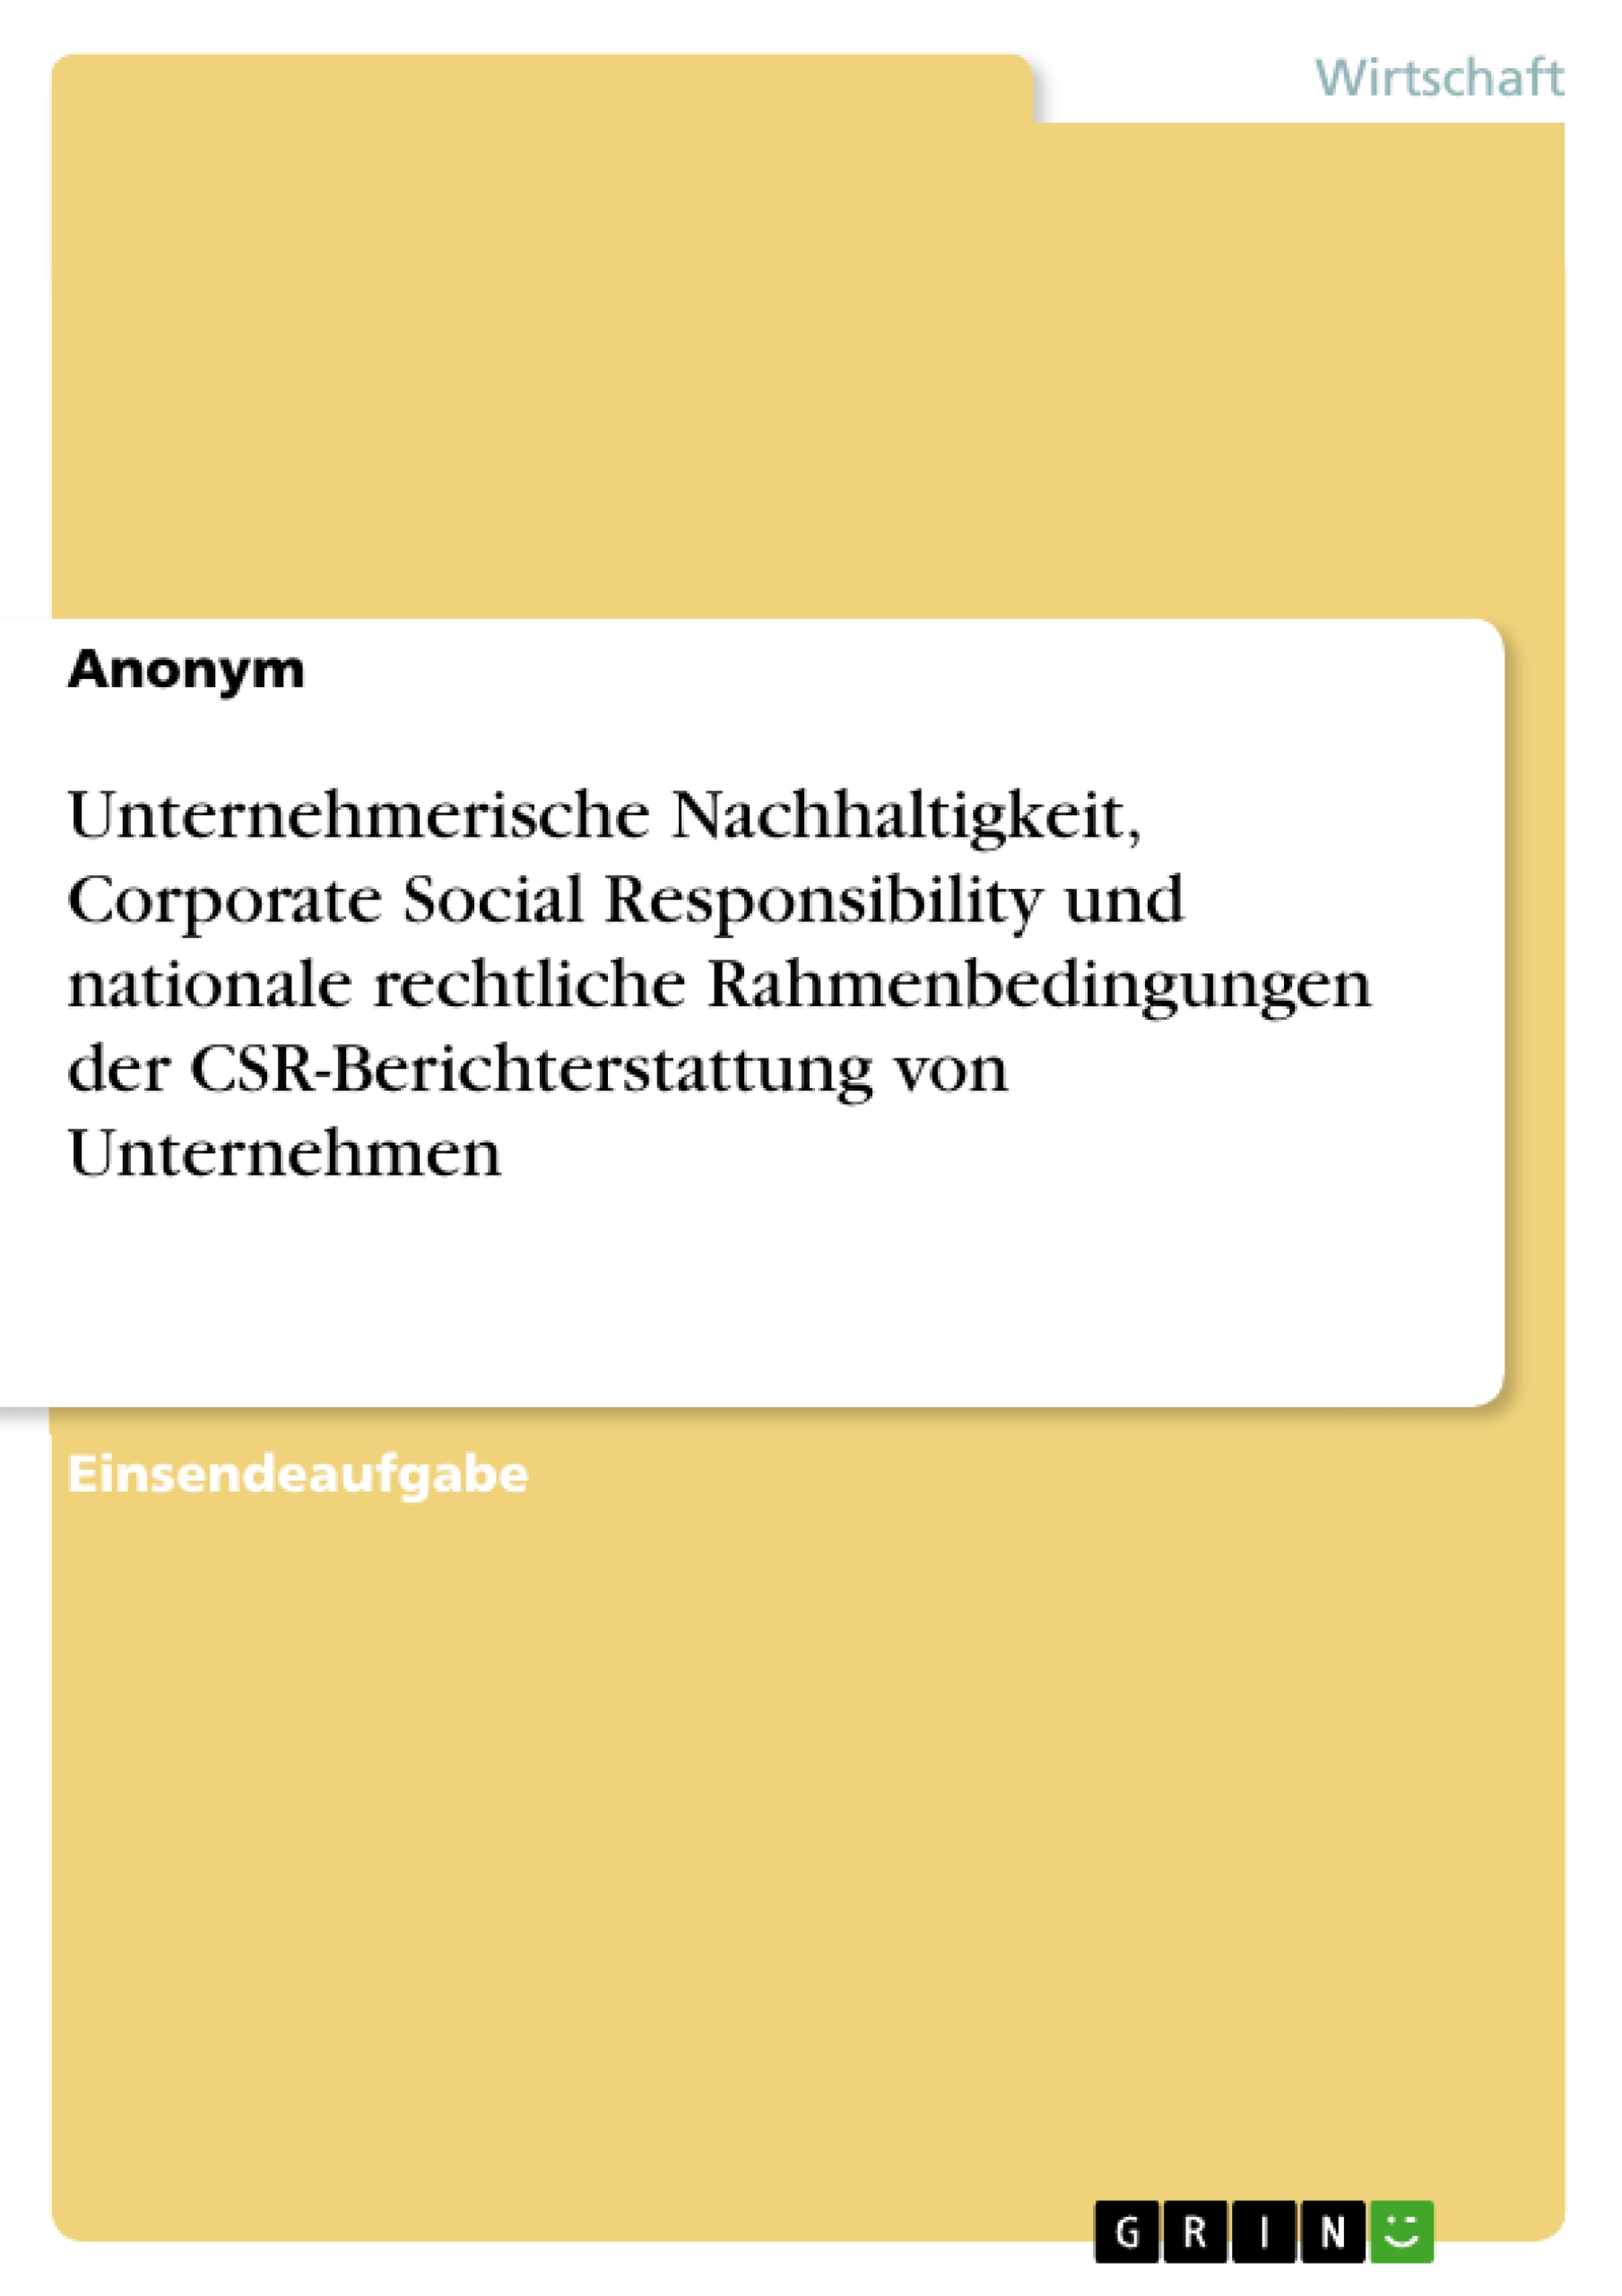 Unternehmerische Nachhaltigkeit, Corporate Social Responsibility und nationale rechtliche Rahmenbedingungen der CSR-Berichterstattung von Unternehmen